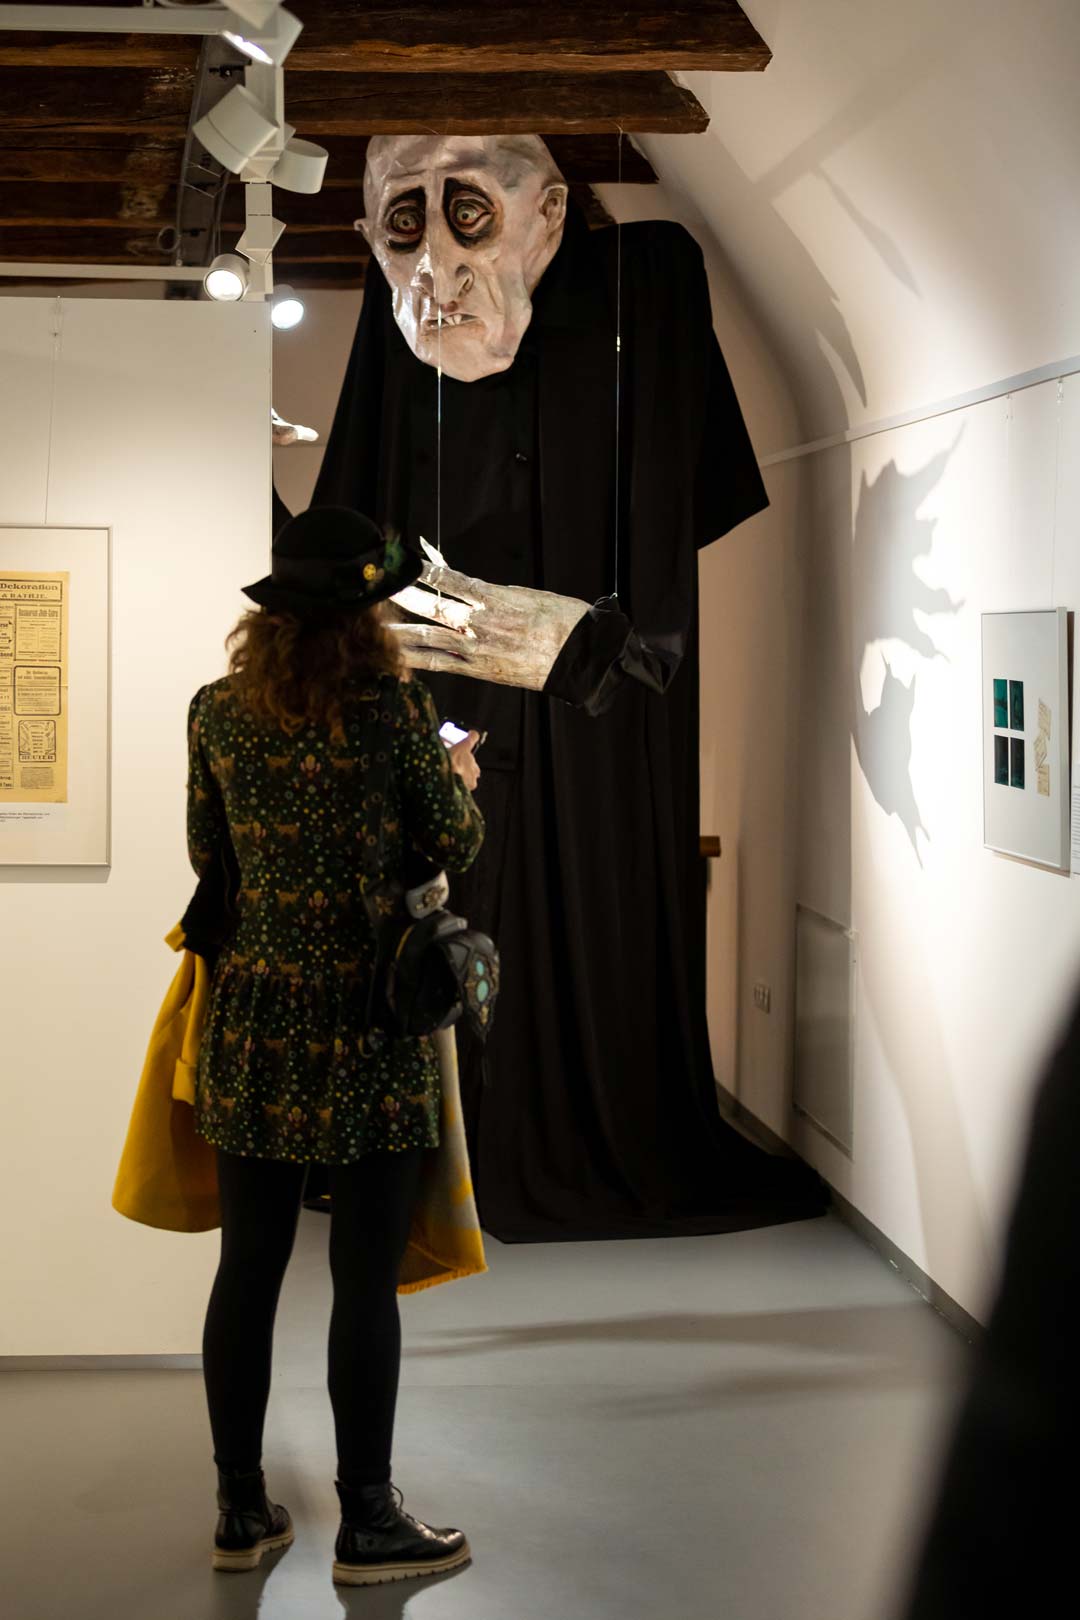 Zu sehen ist eine große Figur im Horrostil die in einem Museum ausgestellt wird